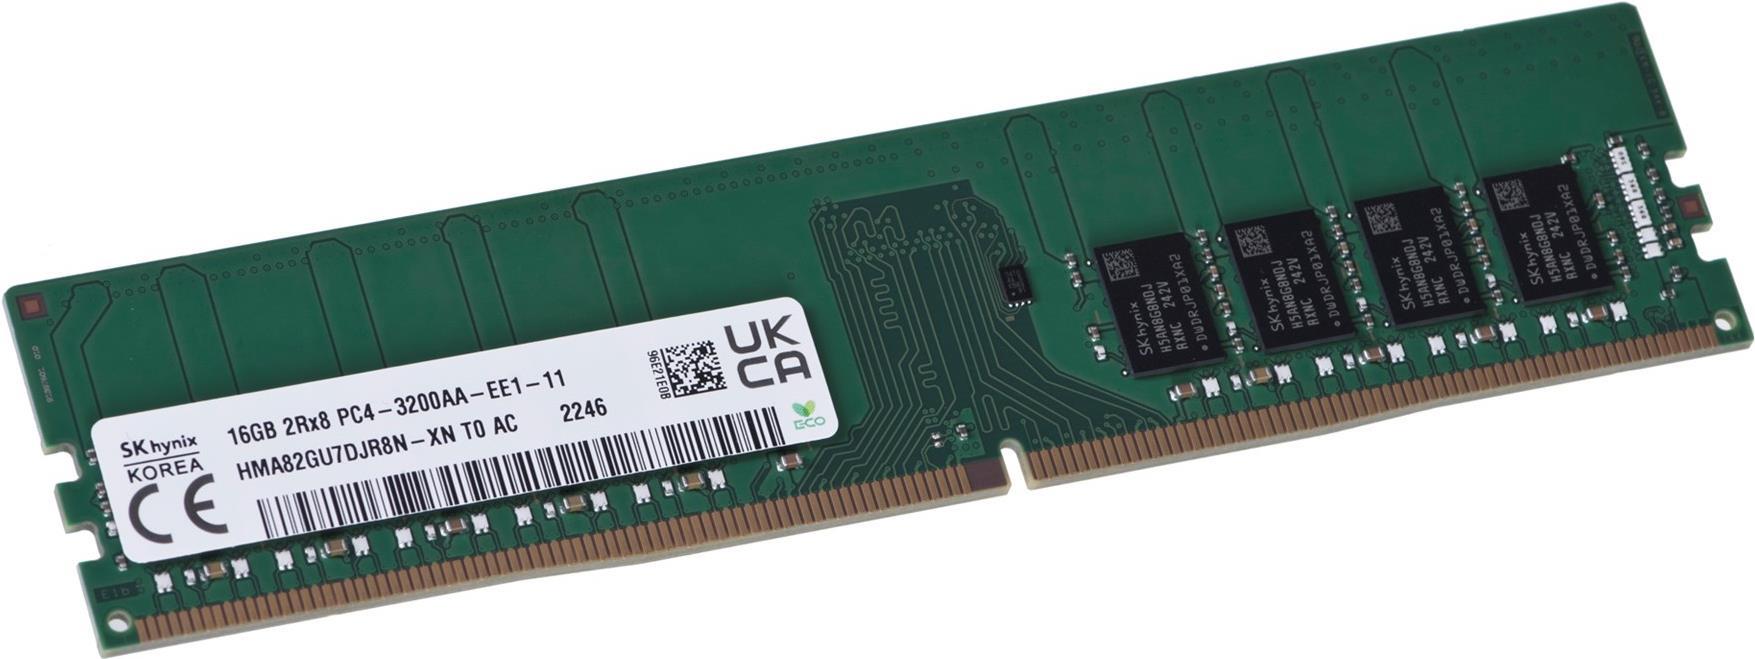 Hynix 16 GB ECC UDIMM DDR4-3200 HMA82GU7DJR8N-XN (HMA82GU7DJR8N-XN) von Hynix